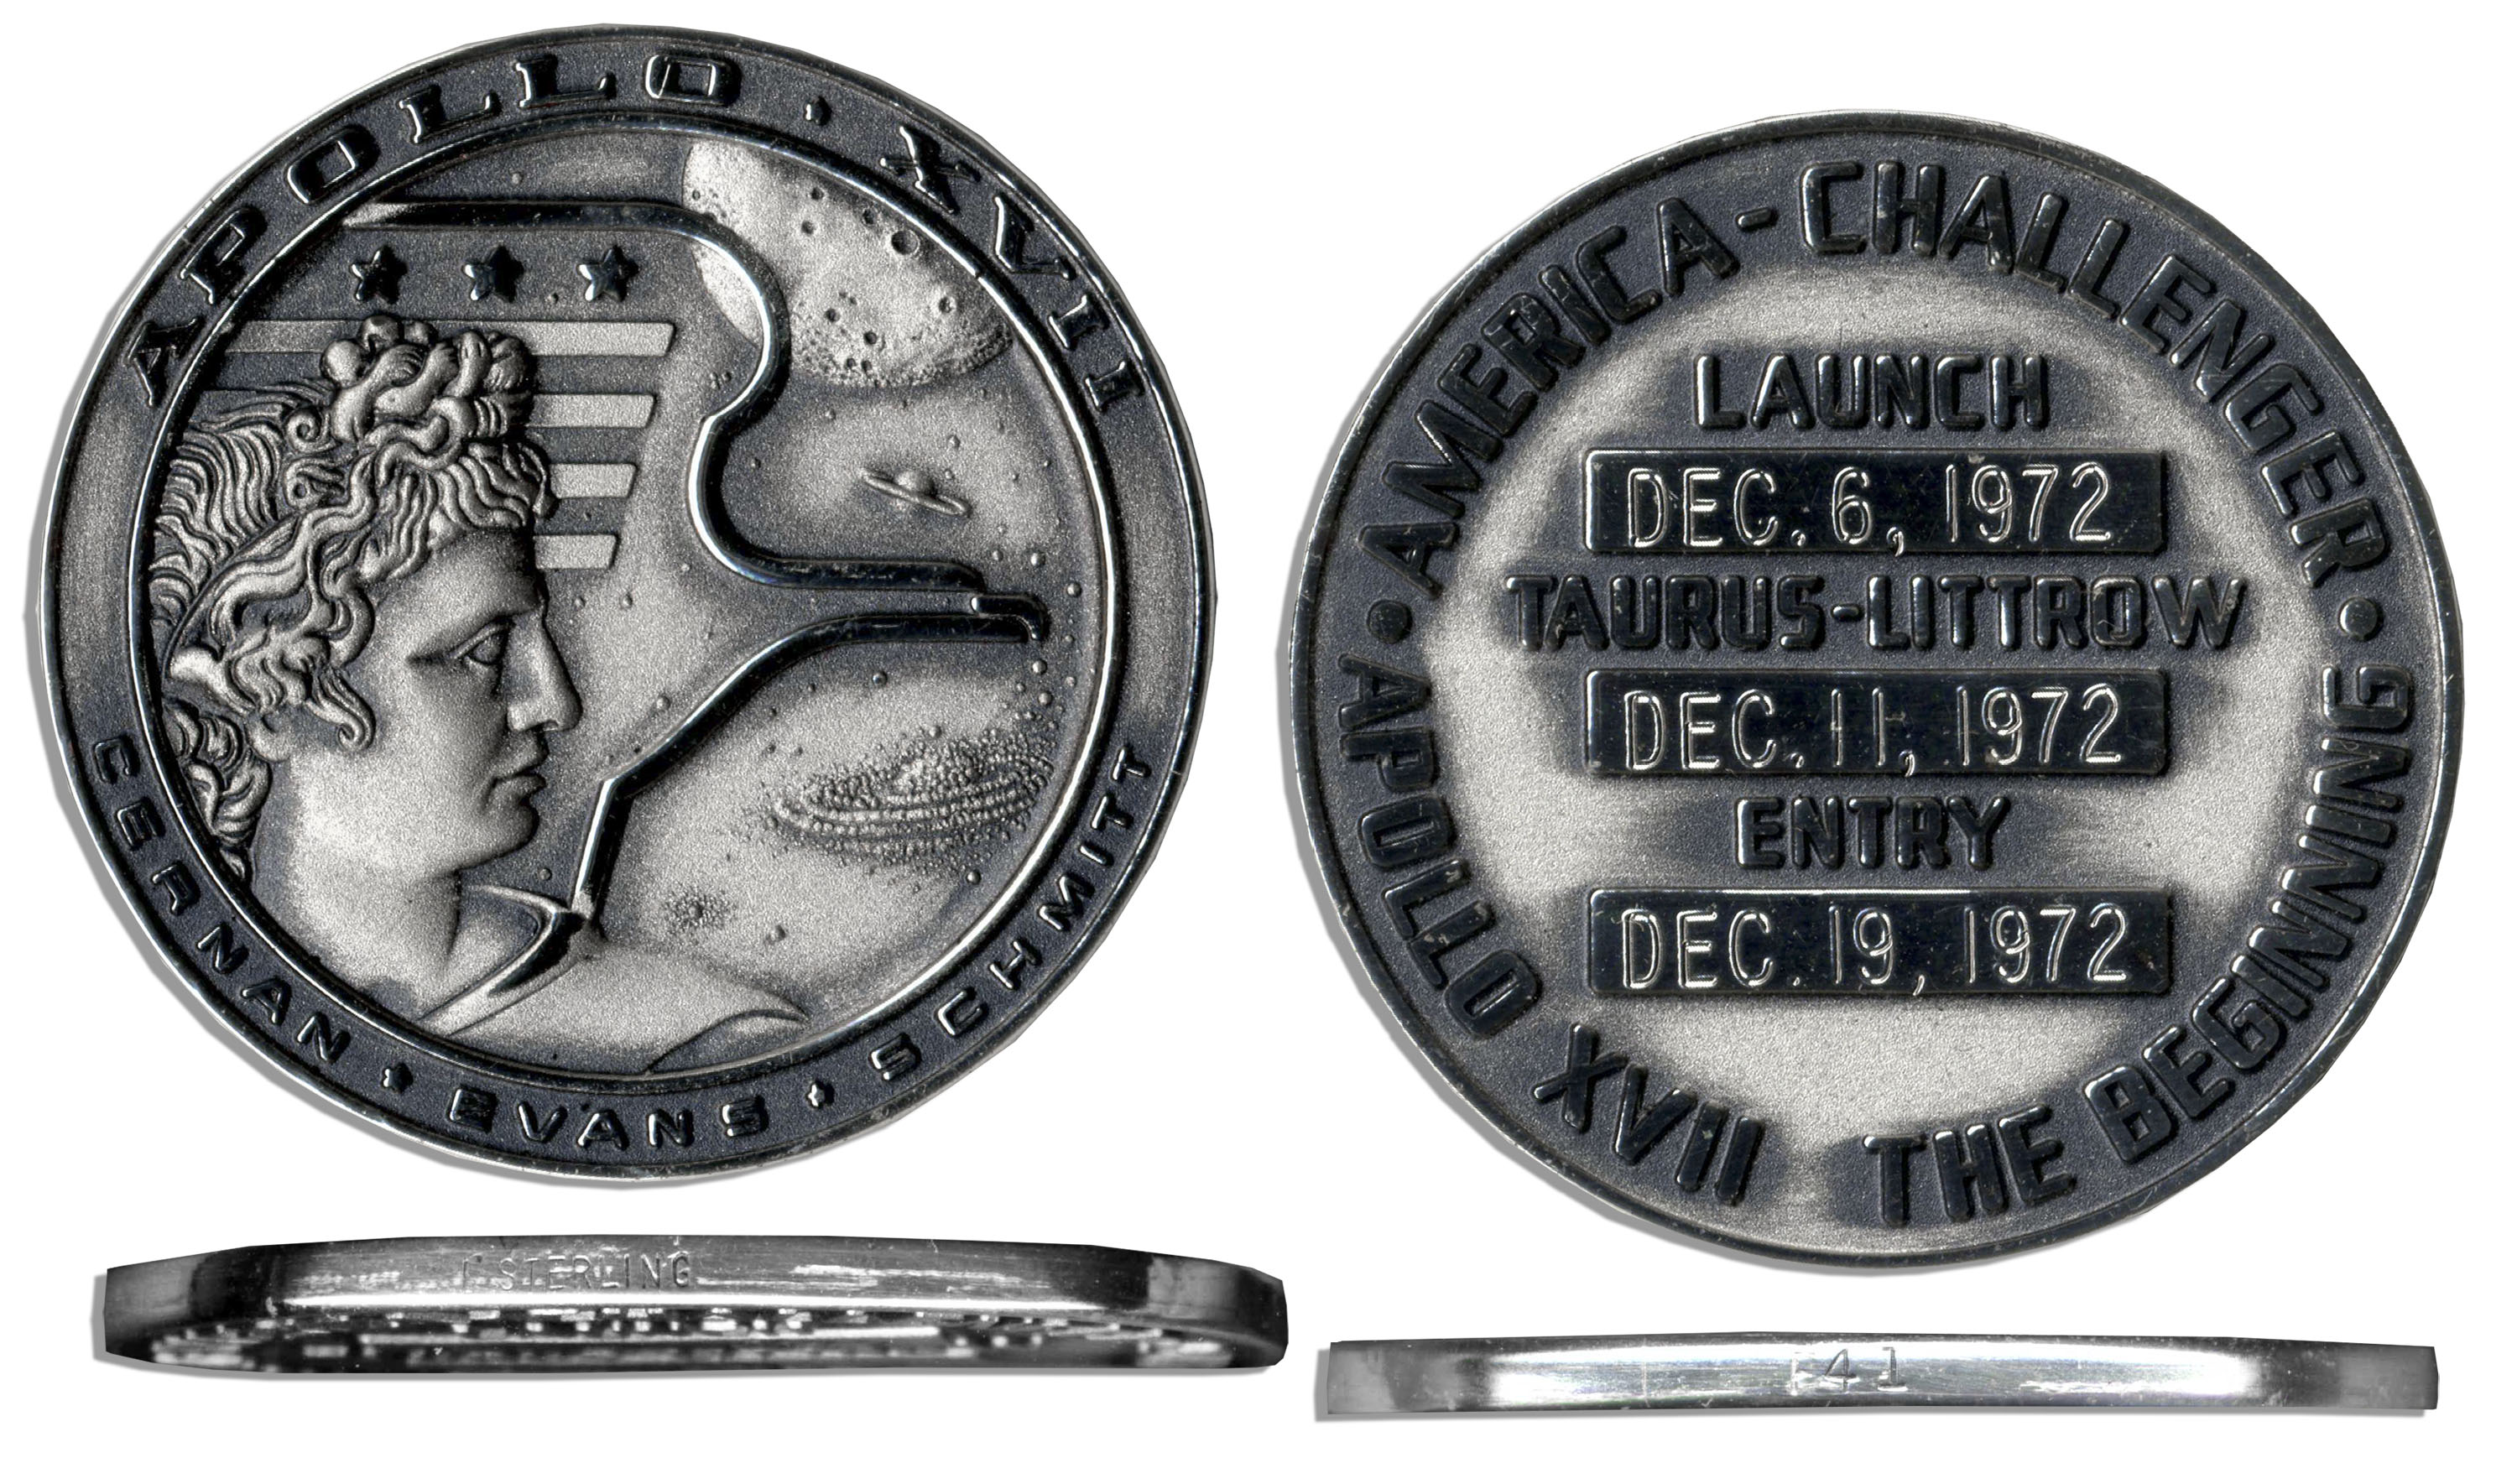  Apollo 17 Robbins Medal